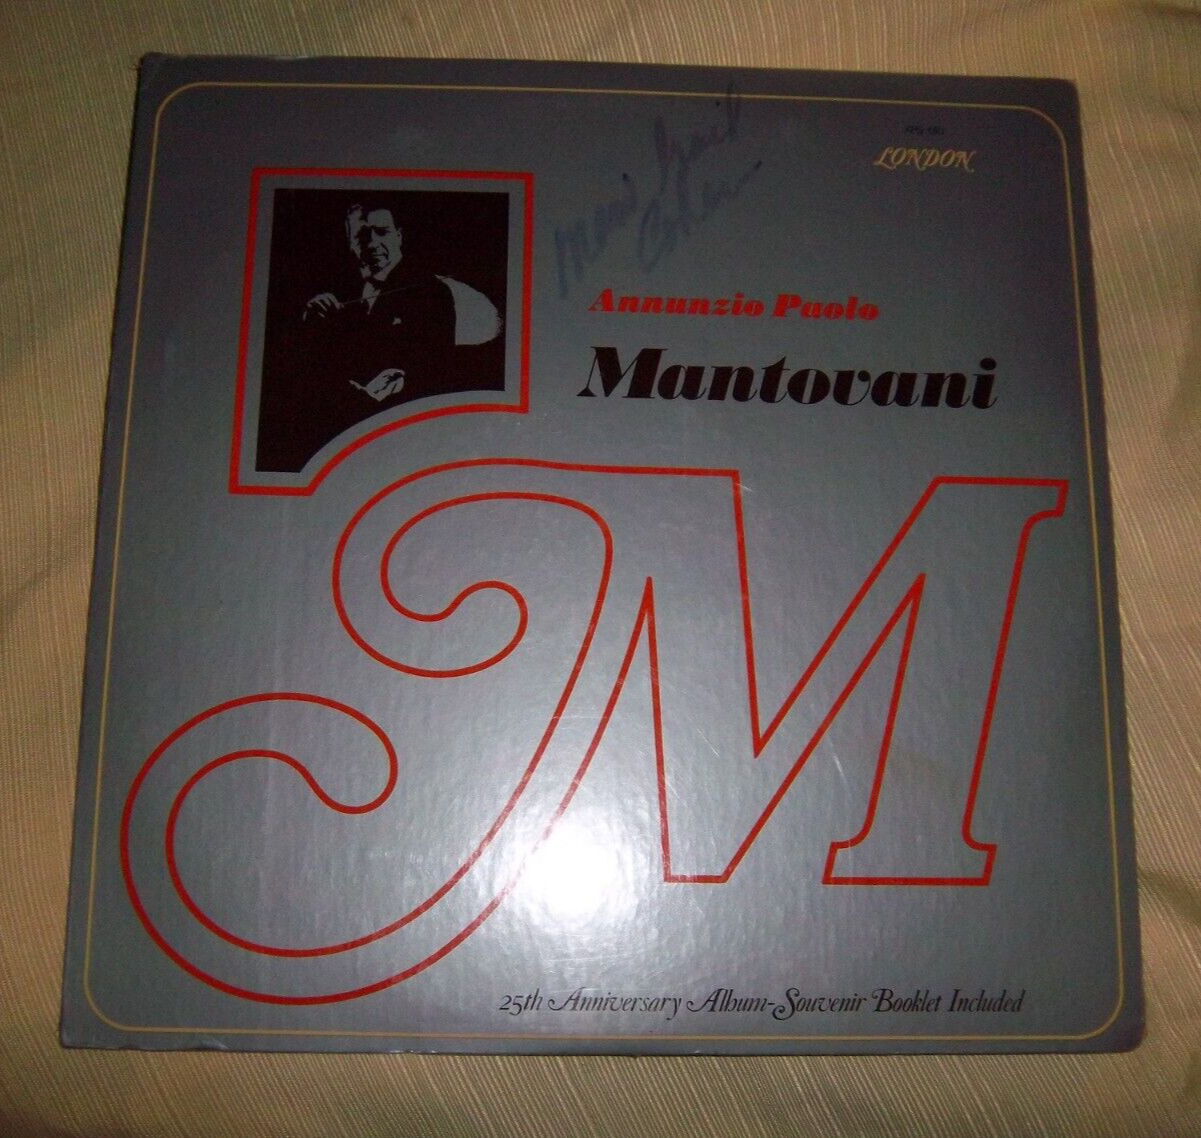 Annunzio Paolo Mantovani -  LP LONDON RECORDS 25th Anniversary XPS 610 - SEALED